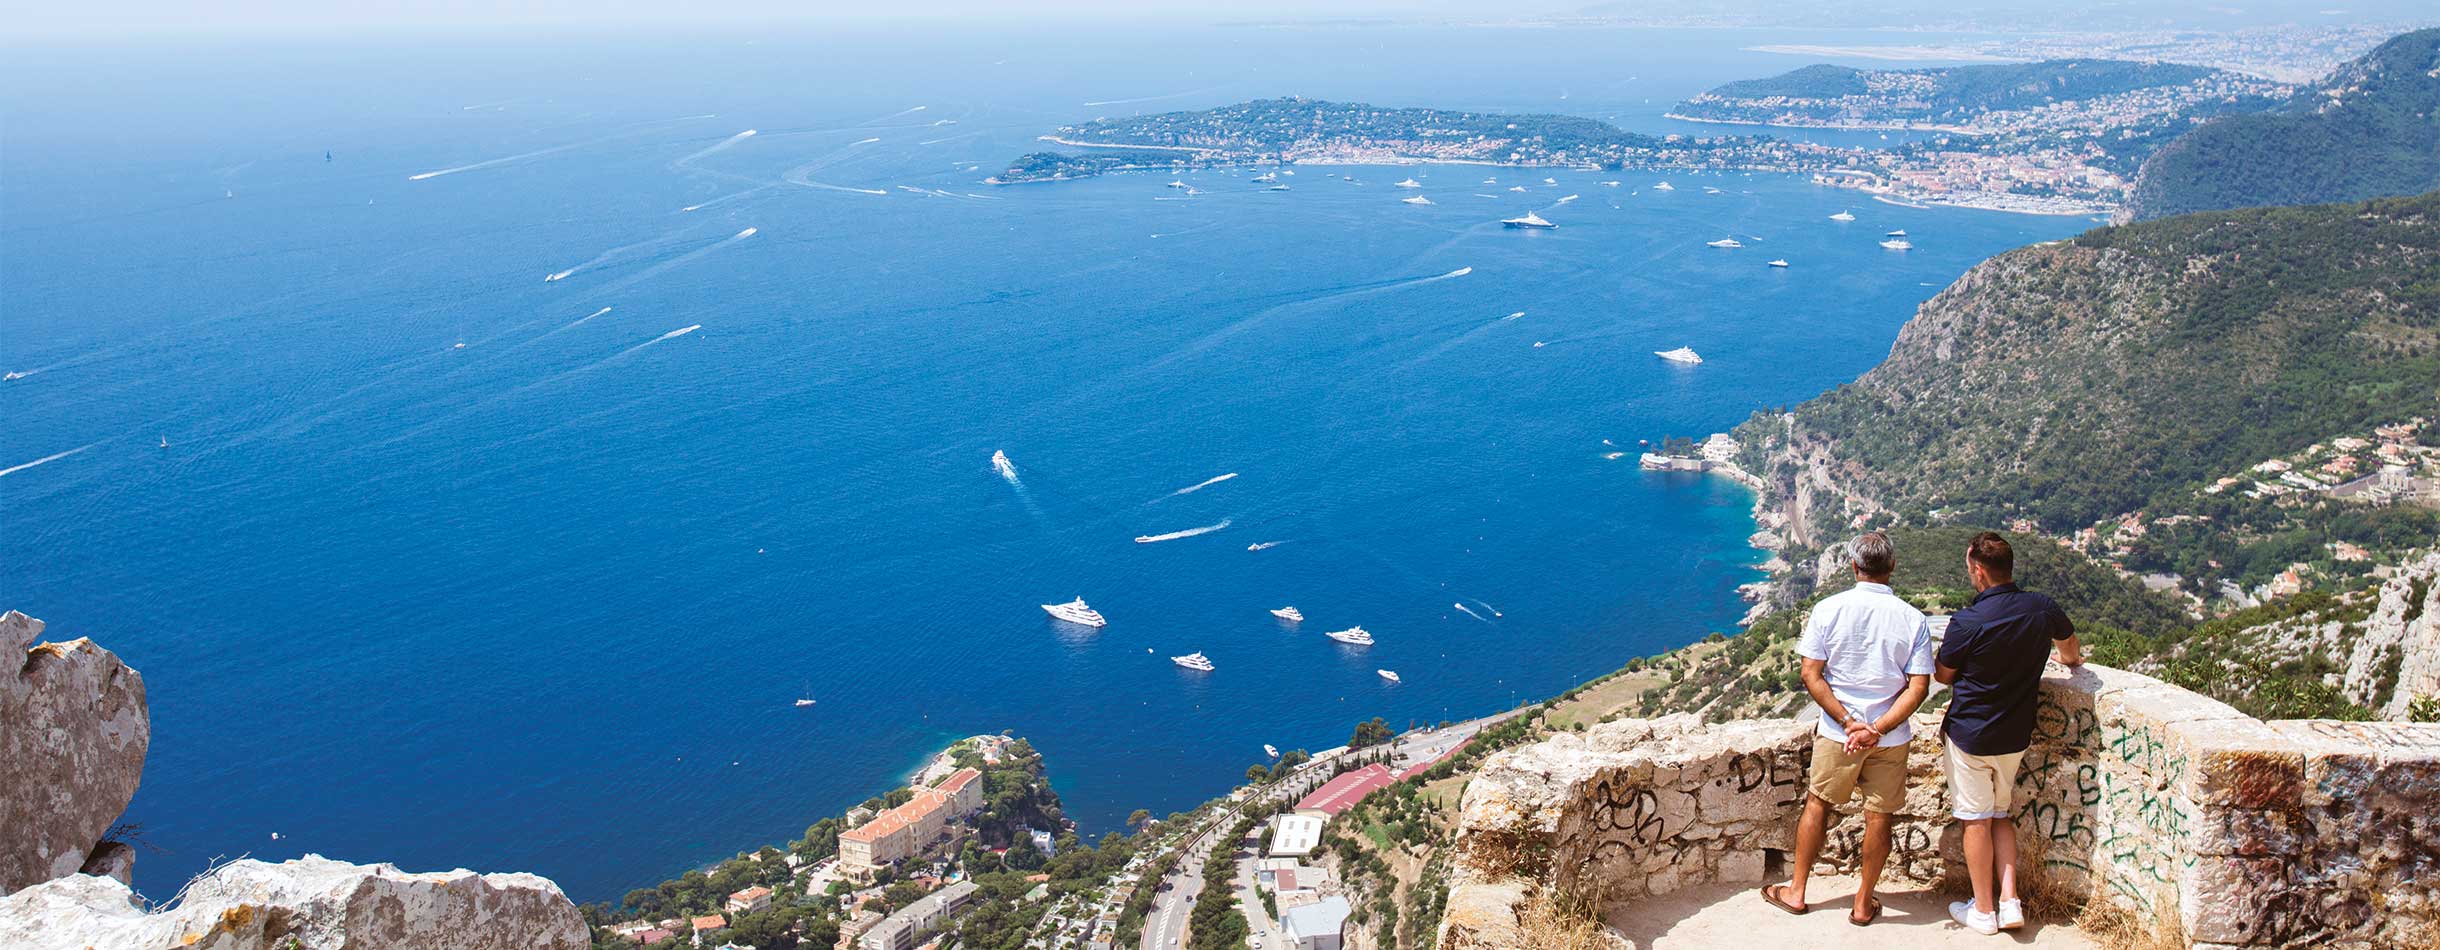 Views of Monaco, France